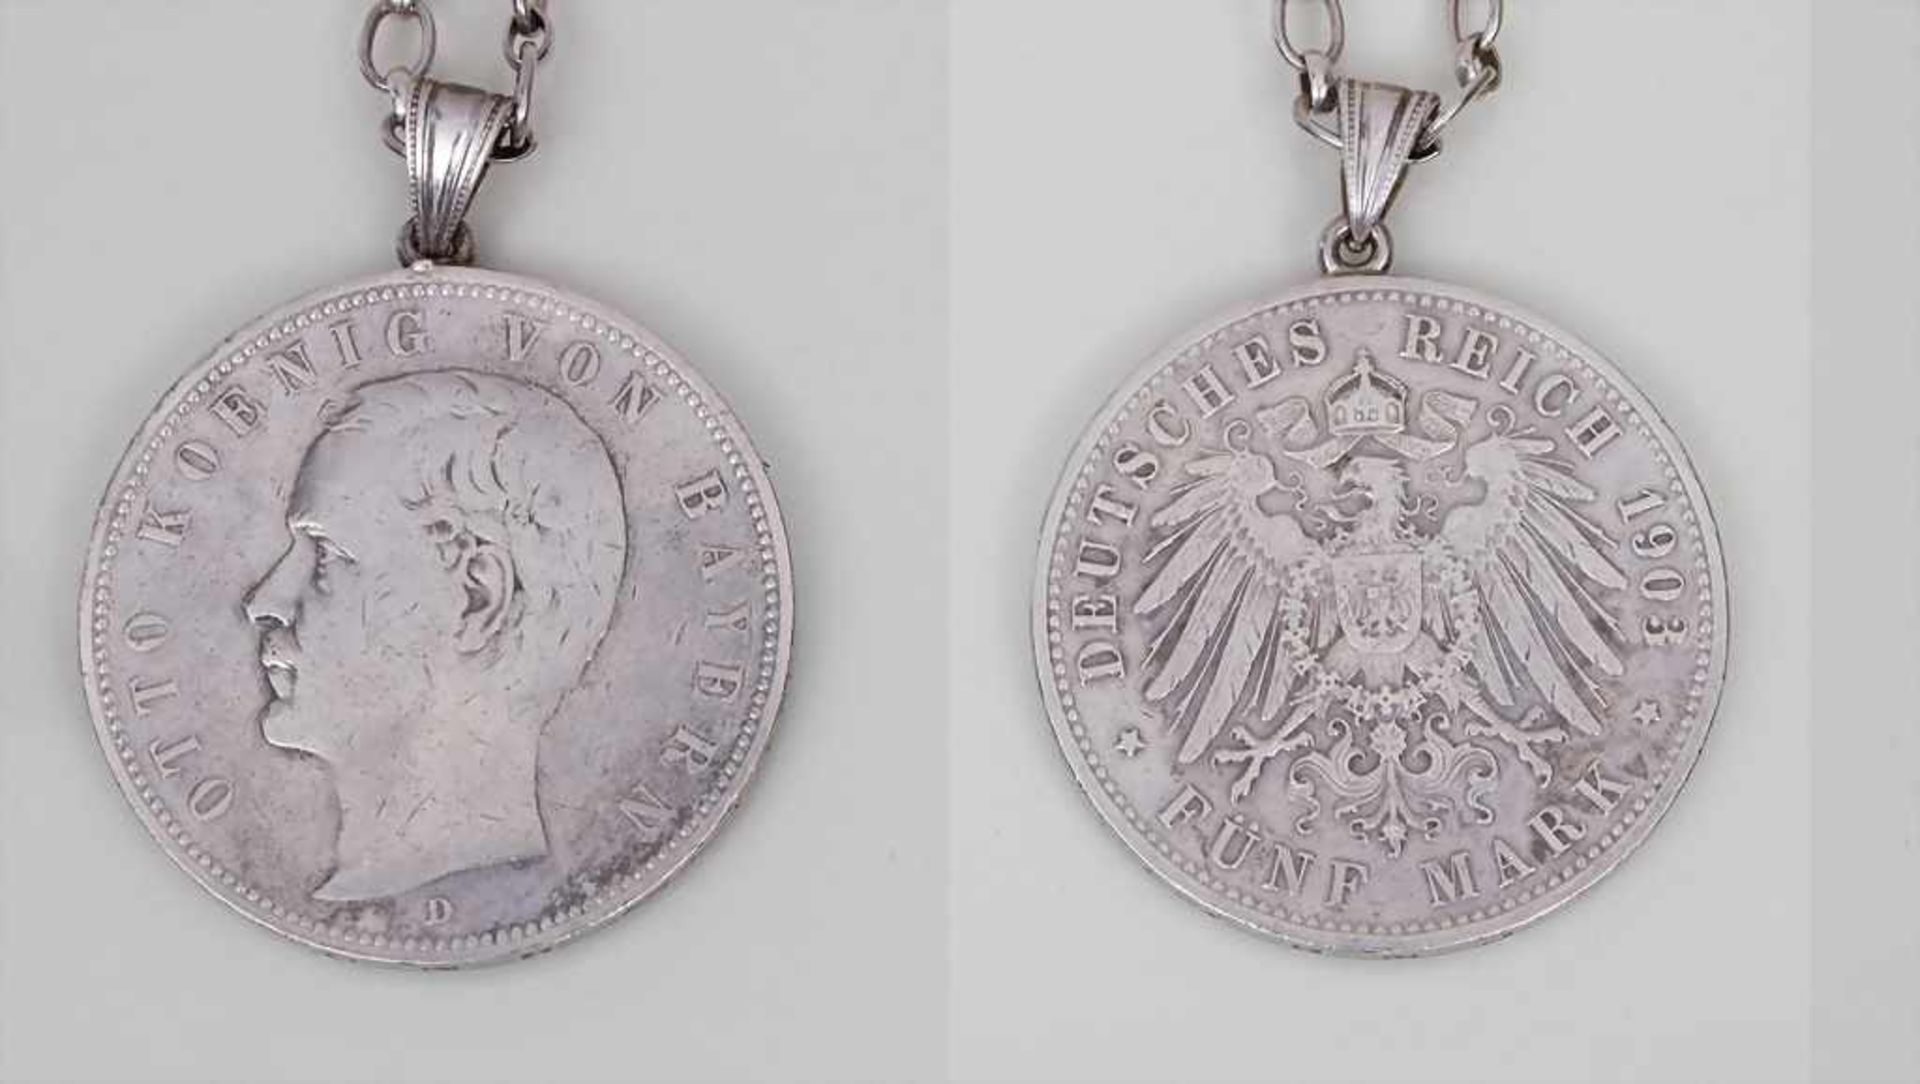 Münzanhänger 5 Mark 1903 Otto König von Bayern / Coin Pendant Material: Feinsilber 900, Kette 835